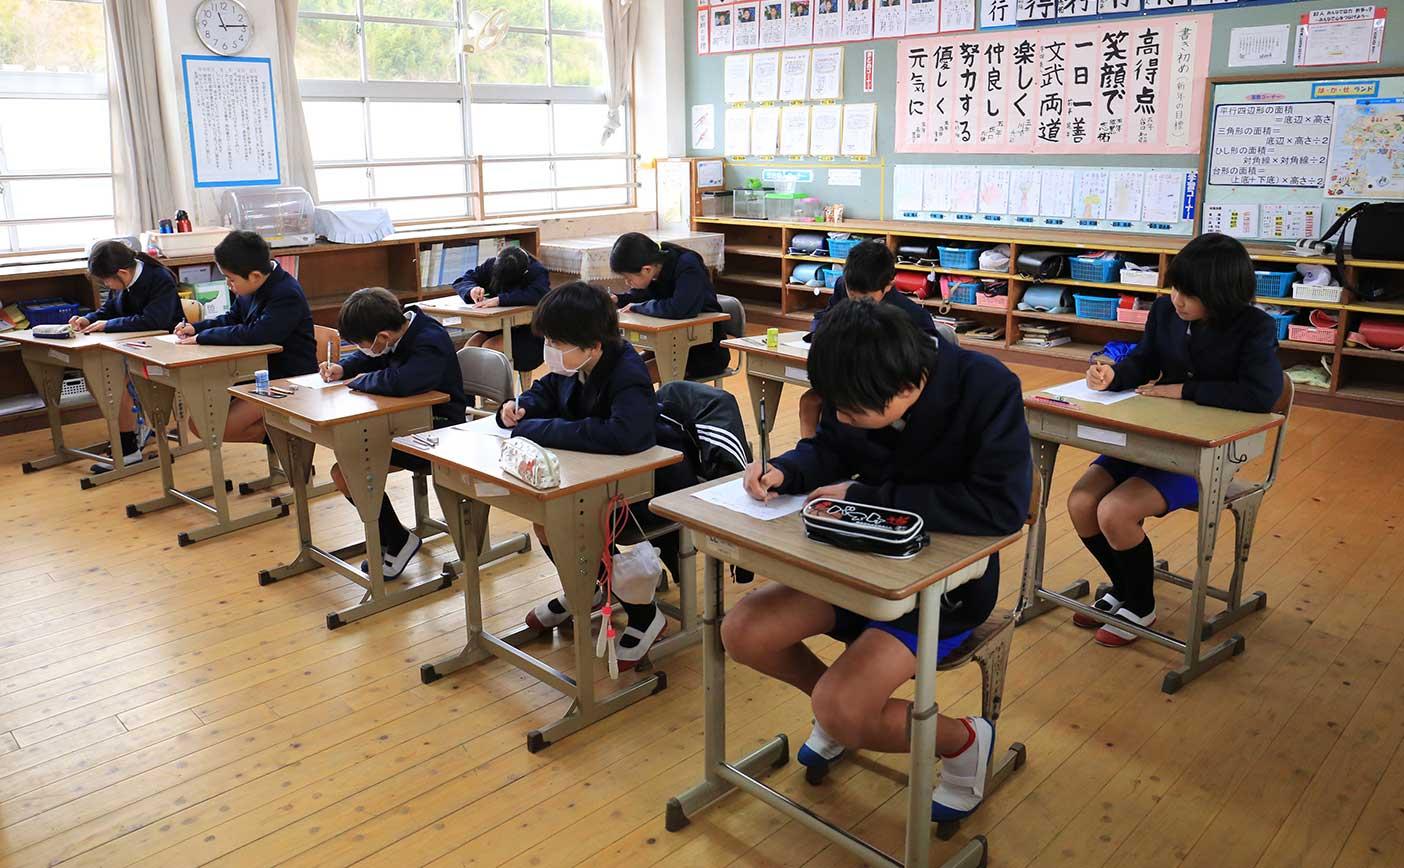 教室の机に9人の小学生が座りプリントにペンを走らせている様子の写真